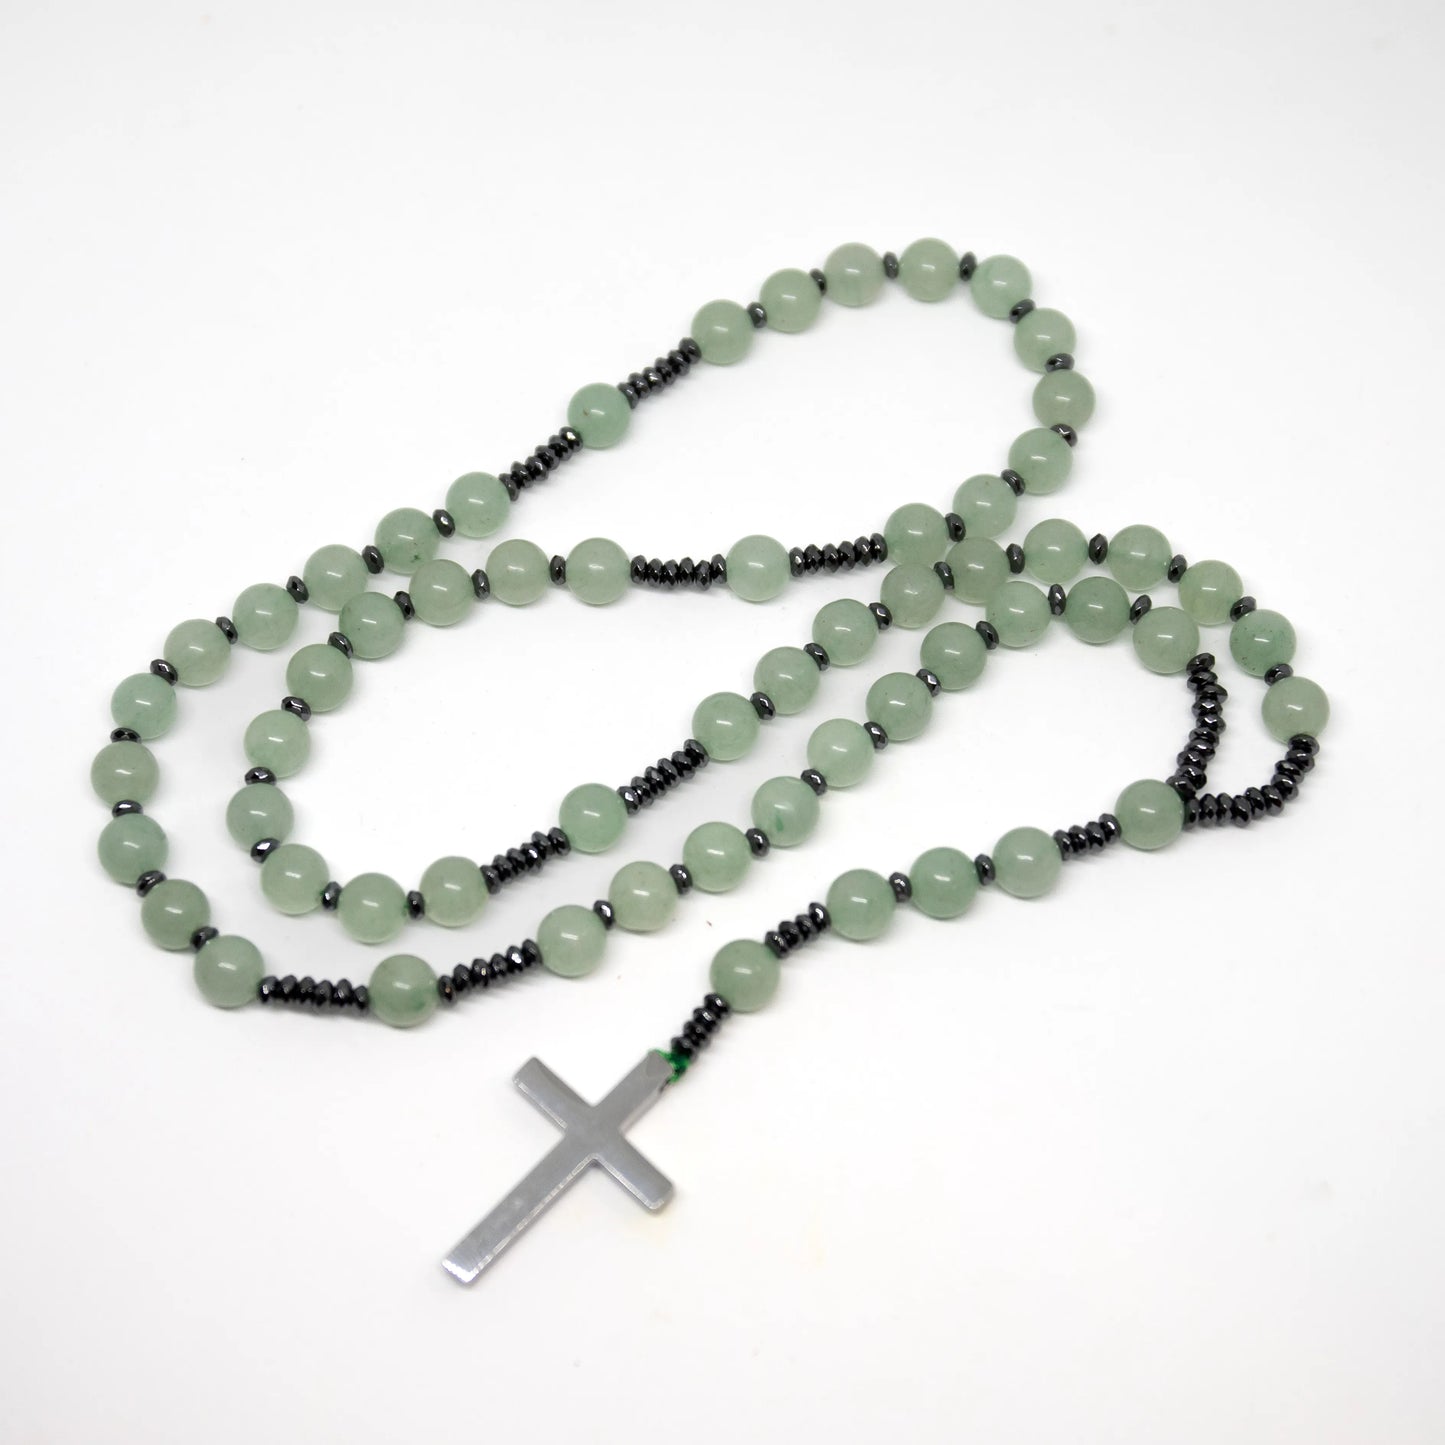 Green Aventurine Rosary - Prayer Beads - 8mm (1 Pack)